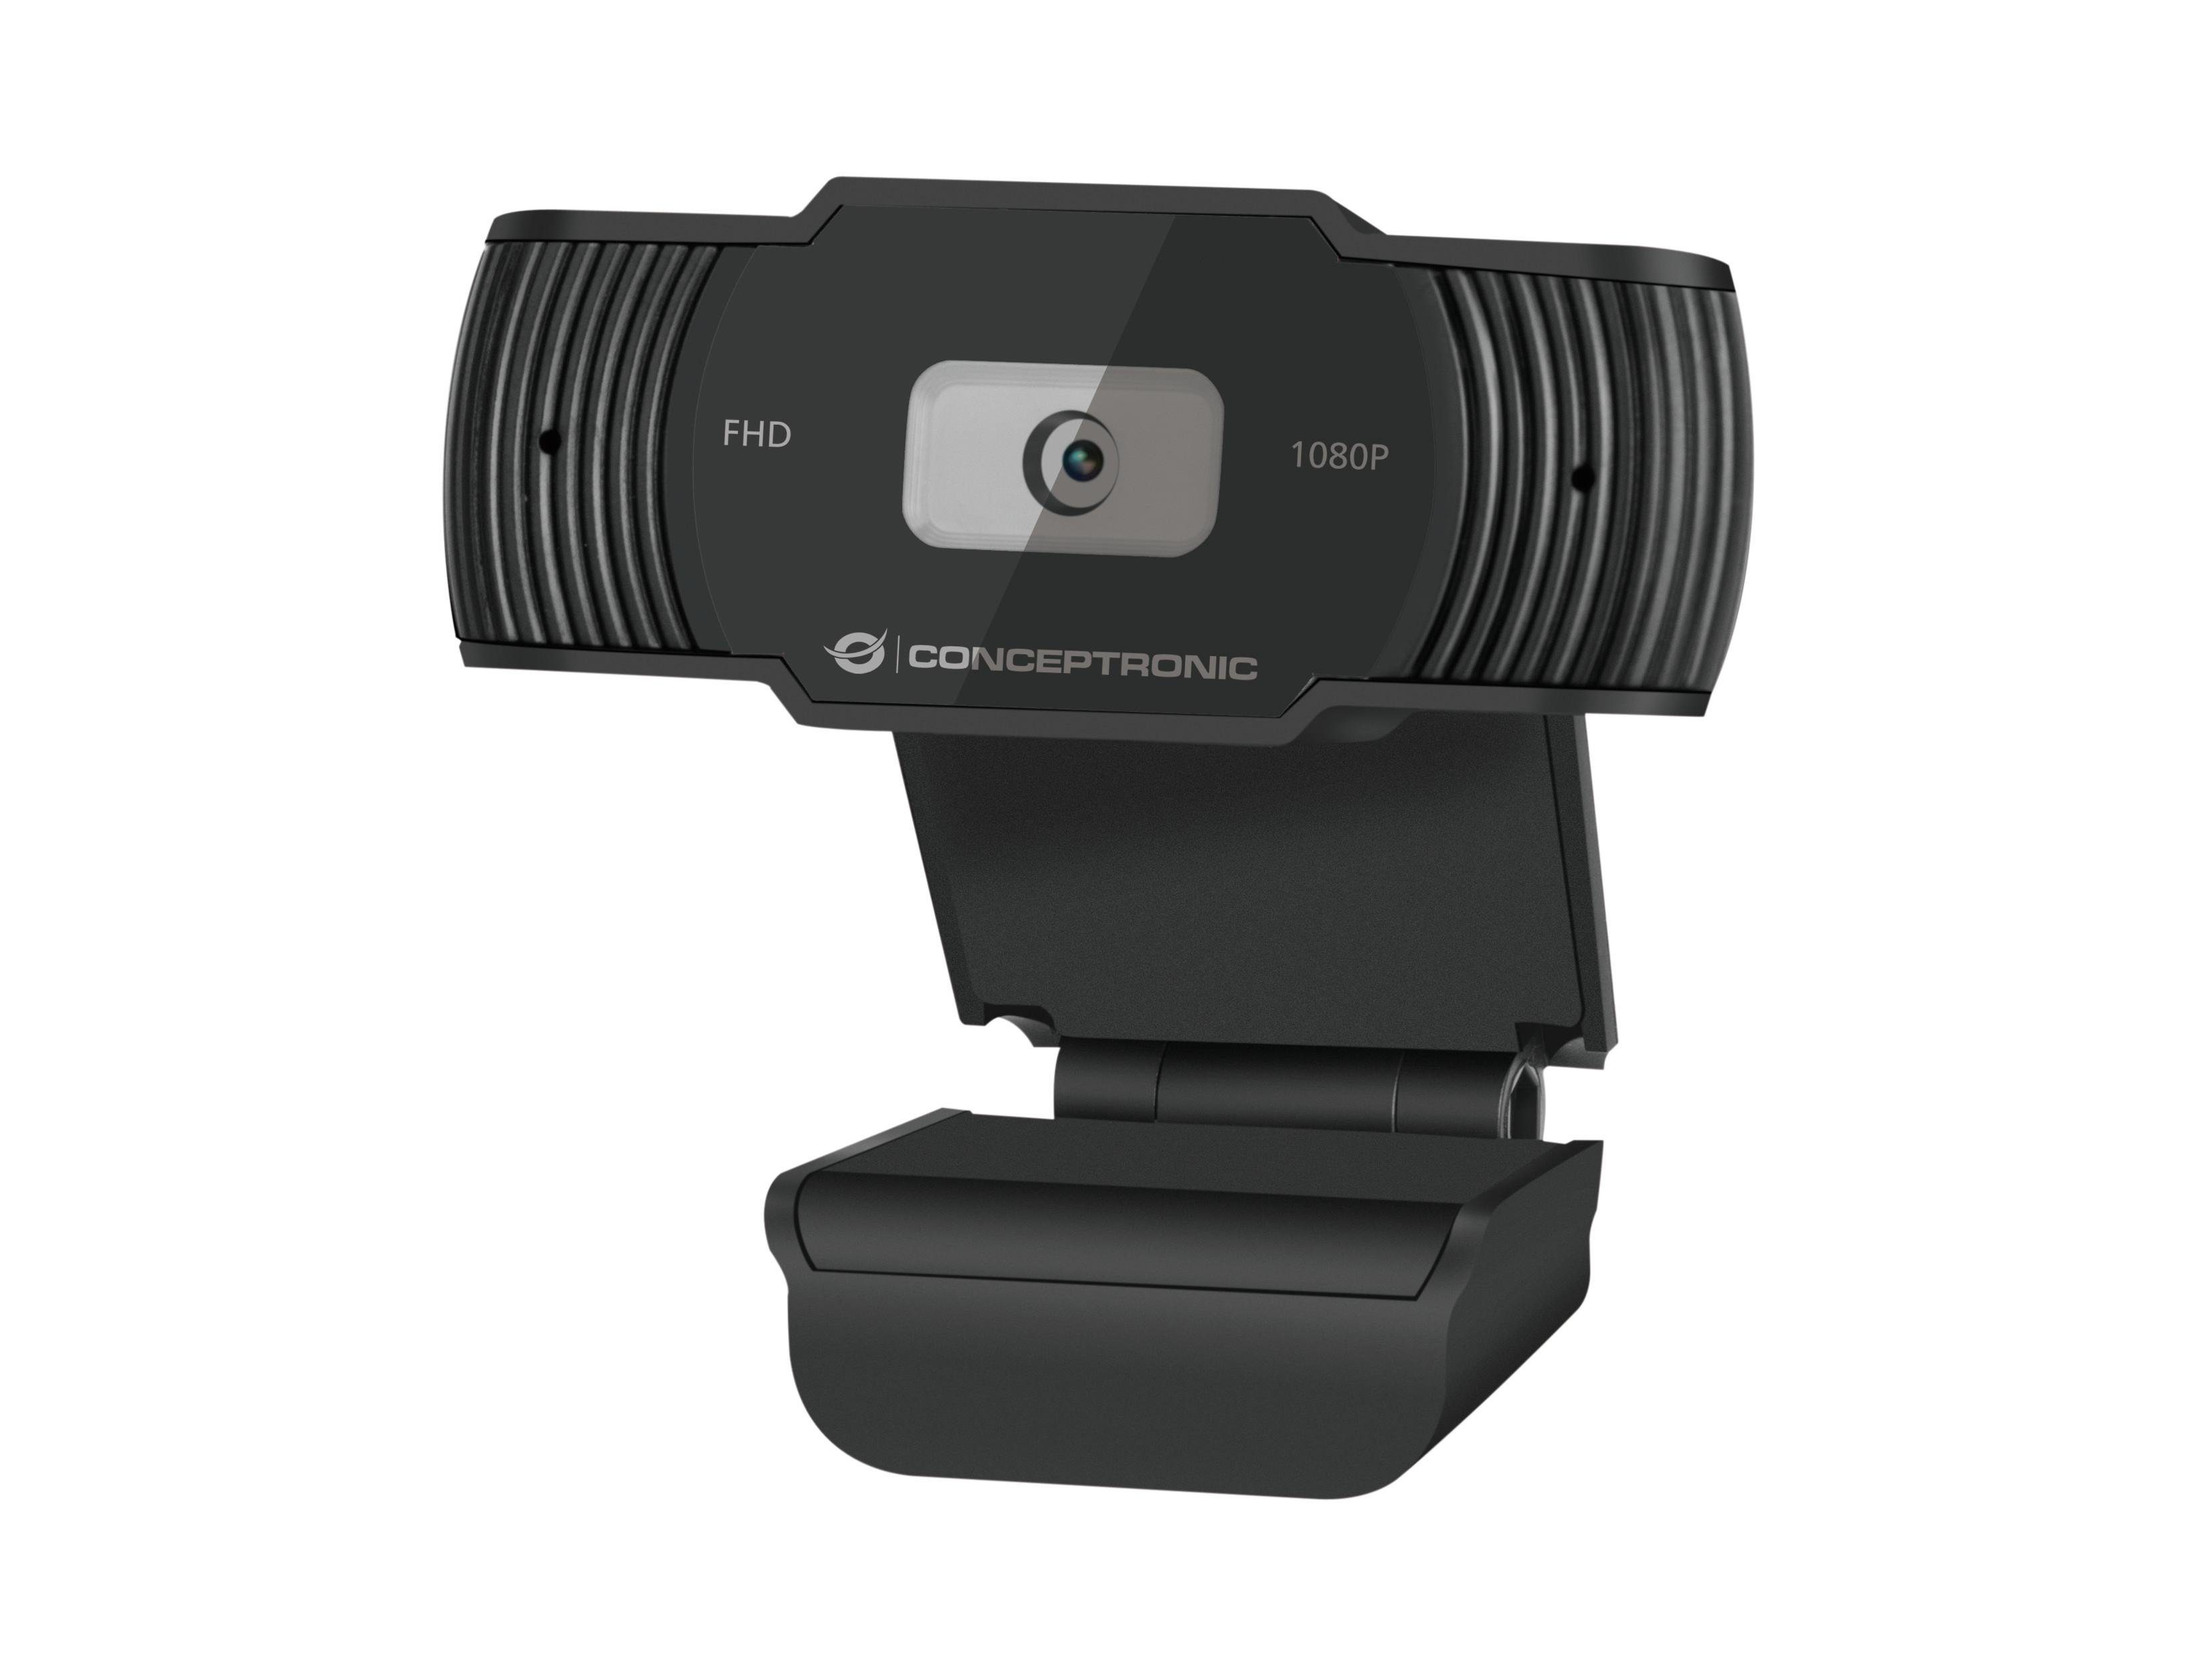 Conceptronic AMDIS 1080P Full HD-Webcam (Full HD, Webcam, Plug-and-Play, Privatsphäreabdeckung, Integriertes Mikrofon mit Rauschreduzierung, Videowiedergabe mit 30 Bildern pro Sekunde, Perfekt für Videokonferenzen, Online-Kurse, Gaming und Live-Streaming) | Webcams